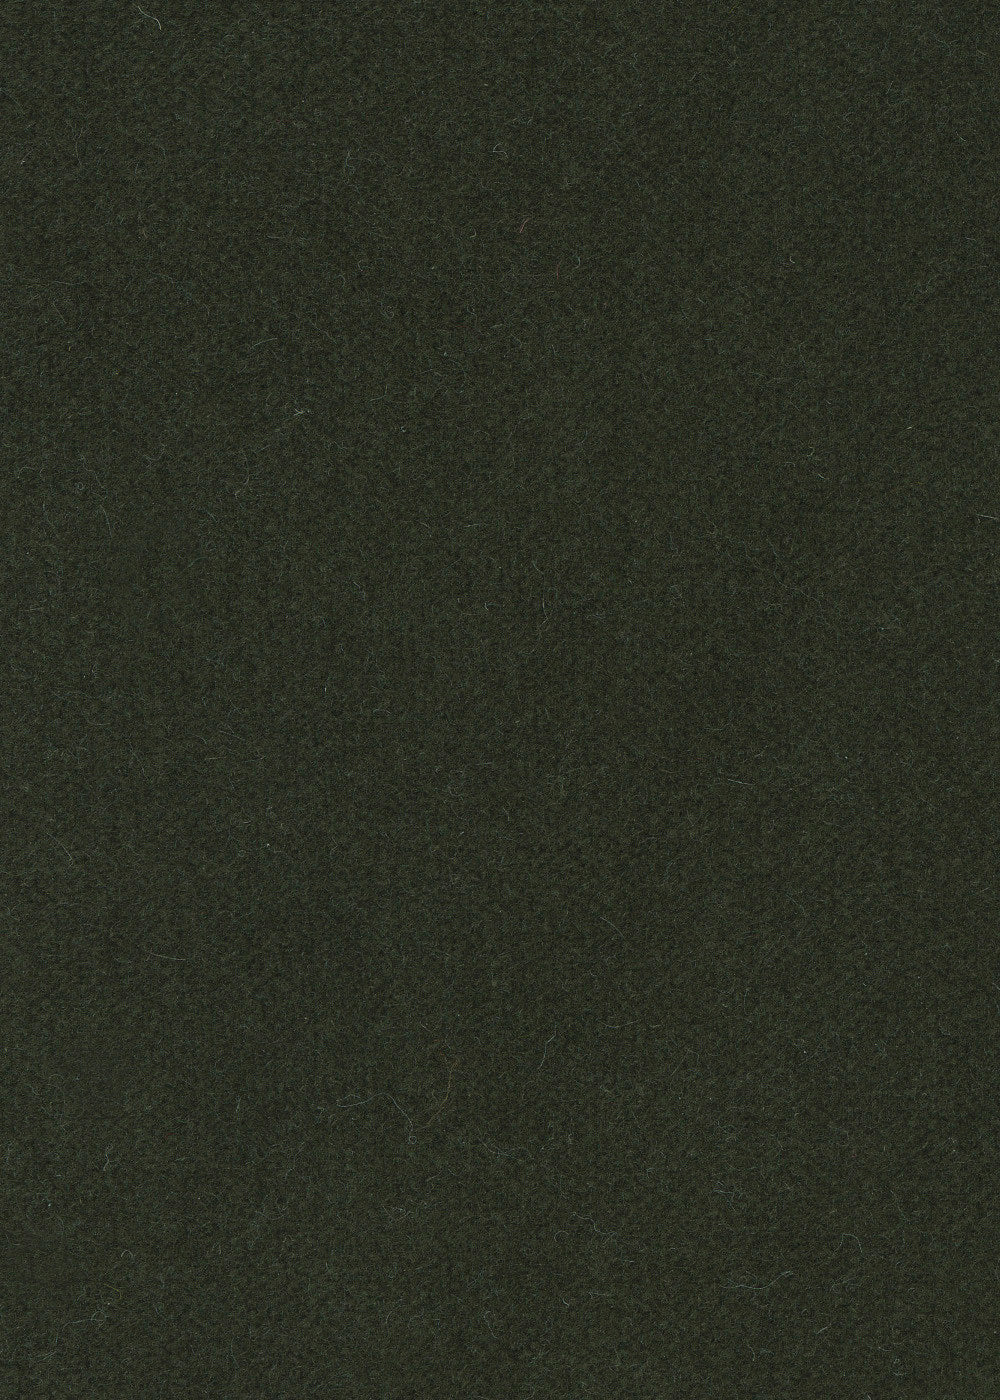 dark grey cashmere velvet fabric for upholstery